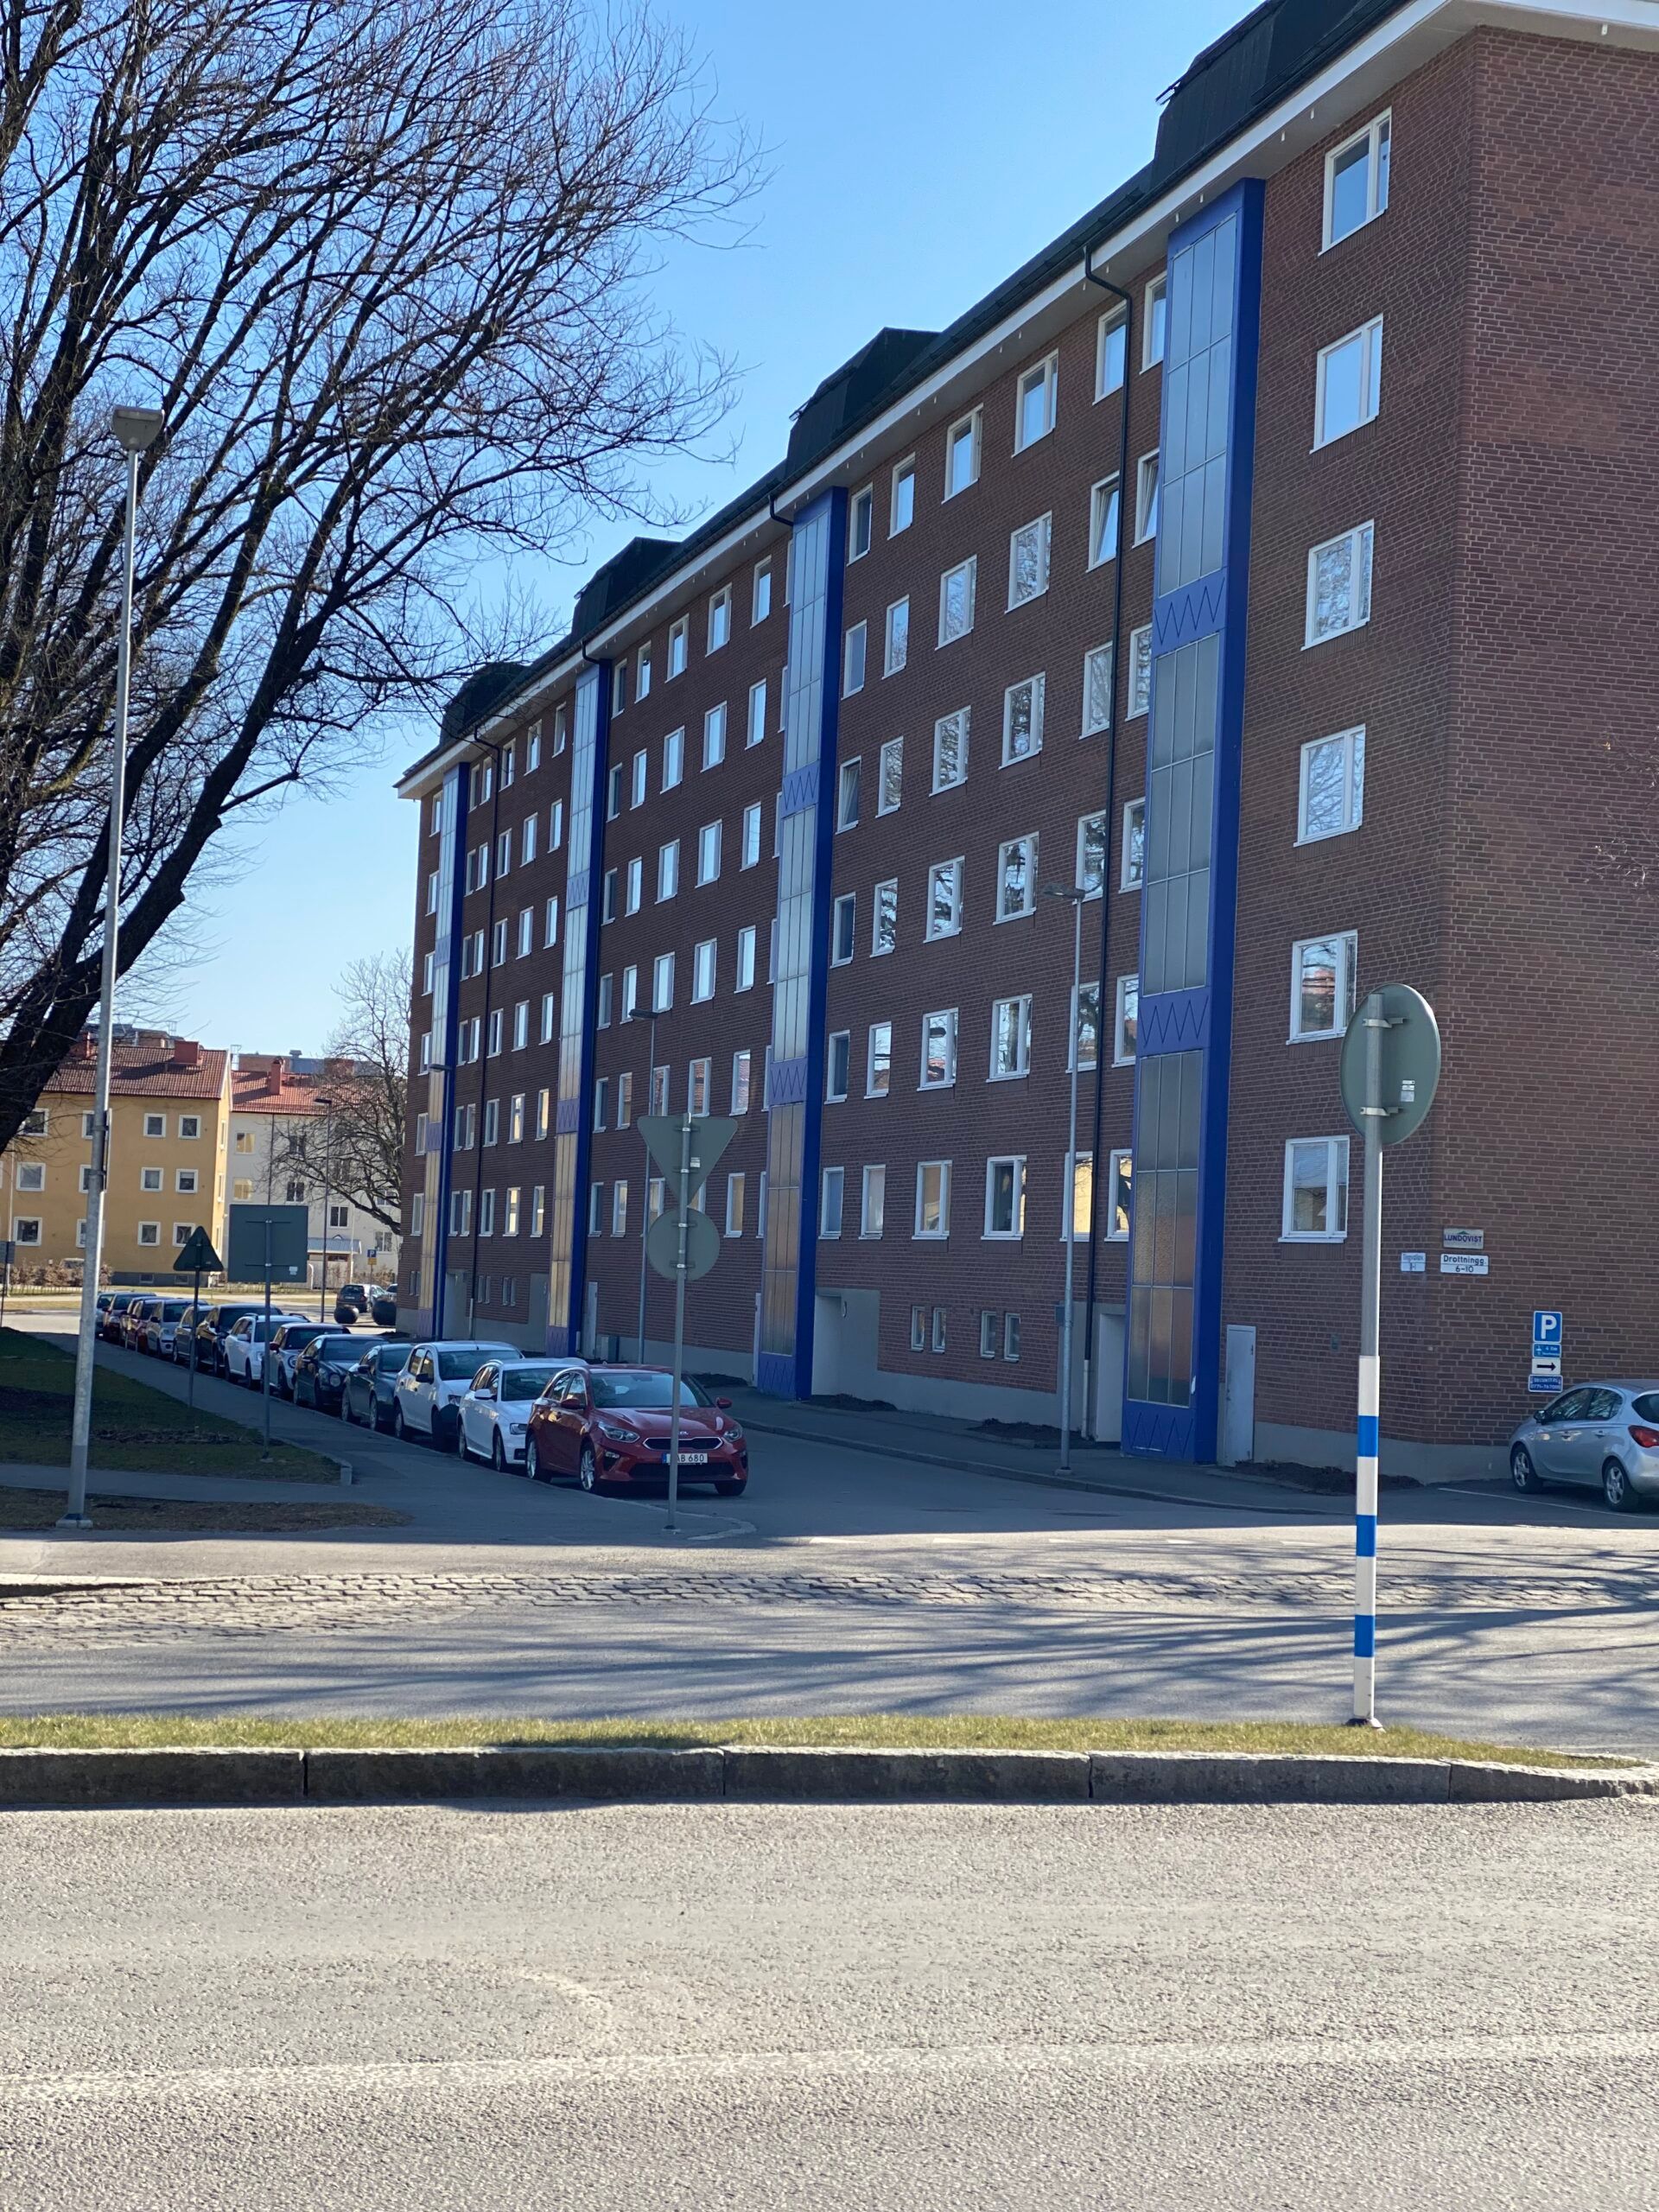 A housing complex in Trollhättan